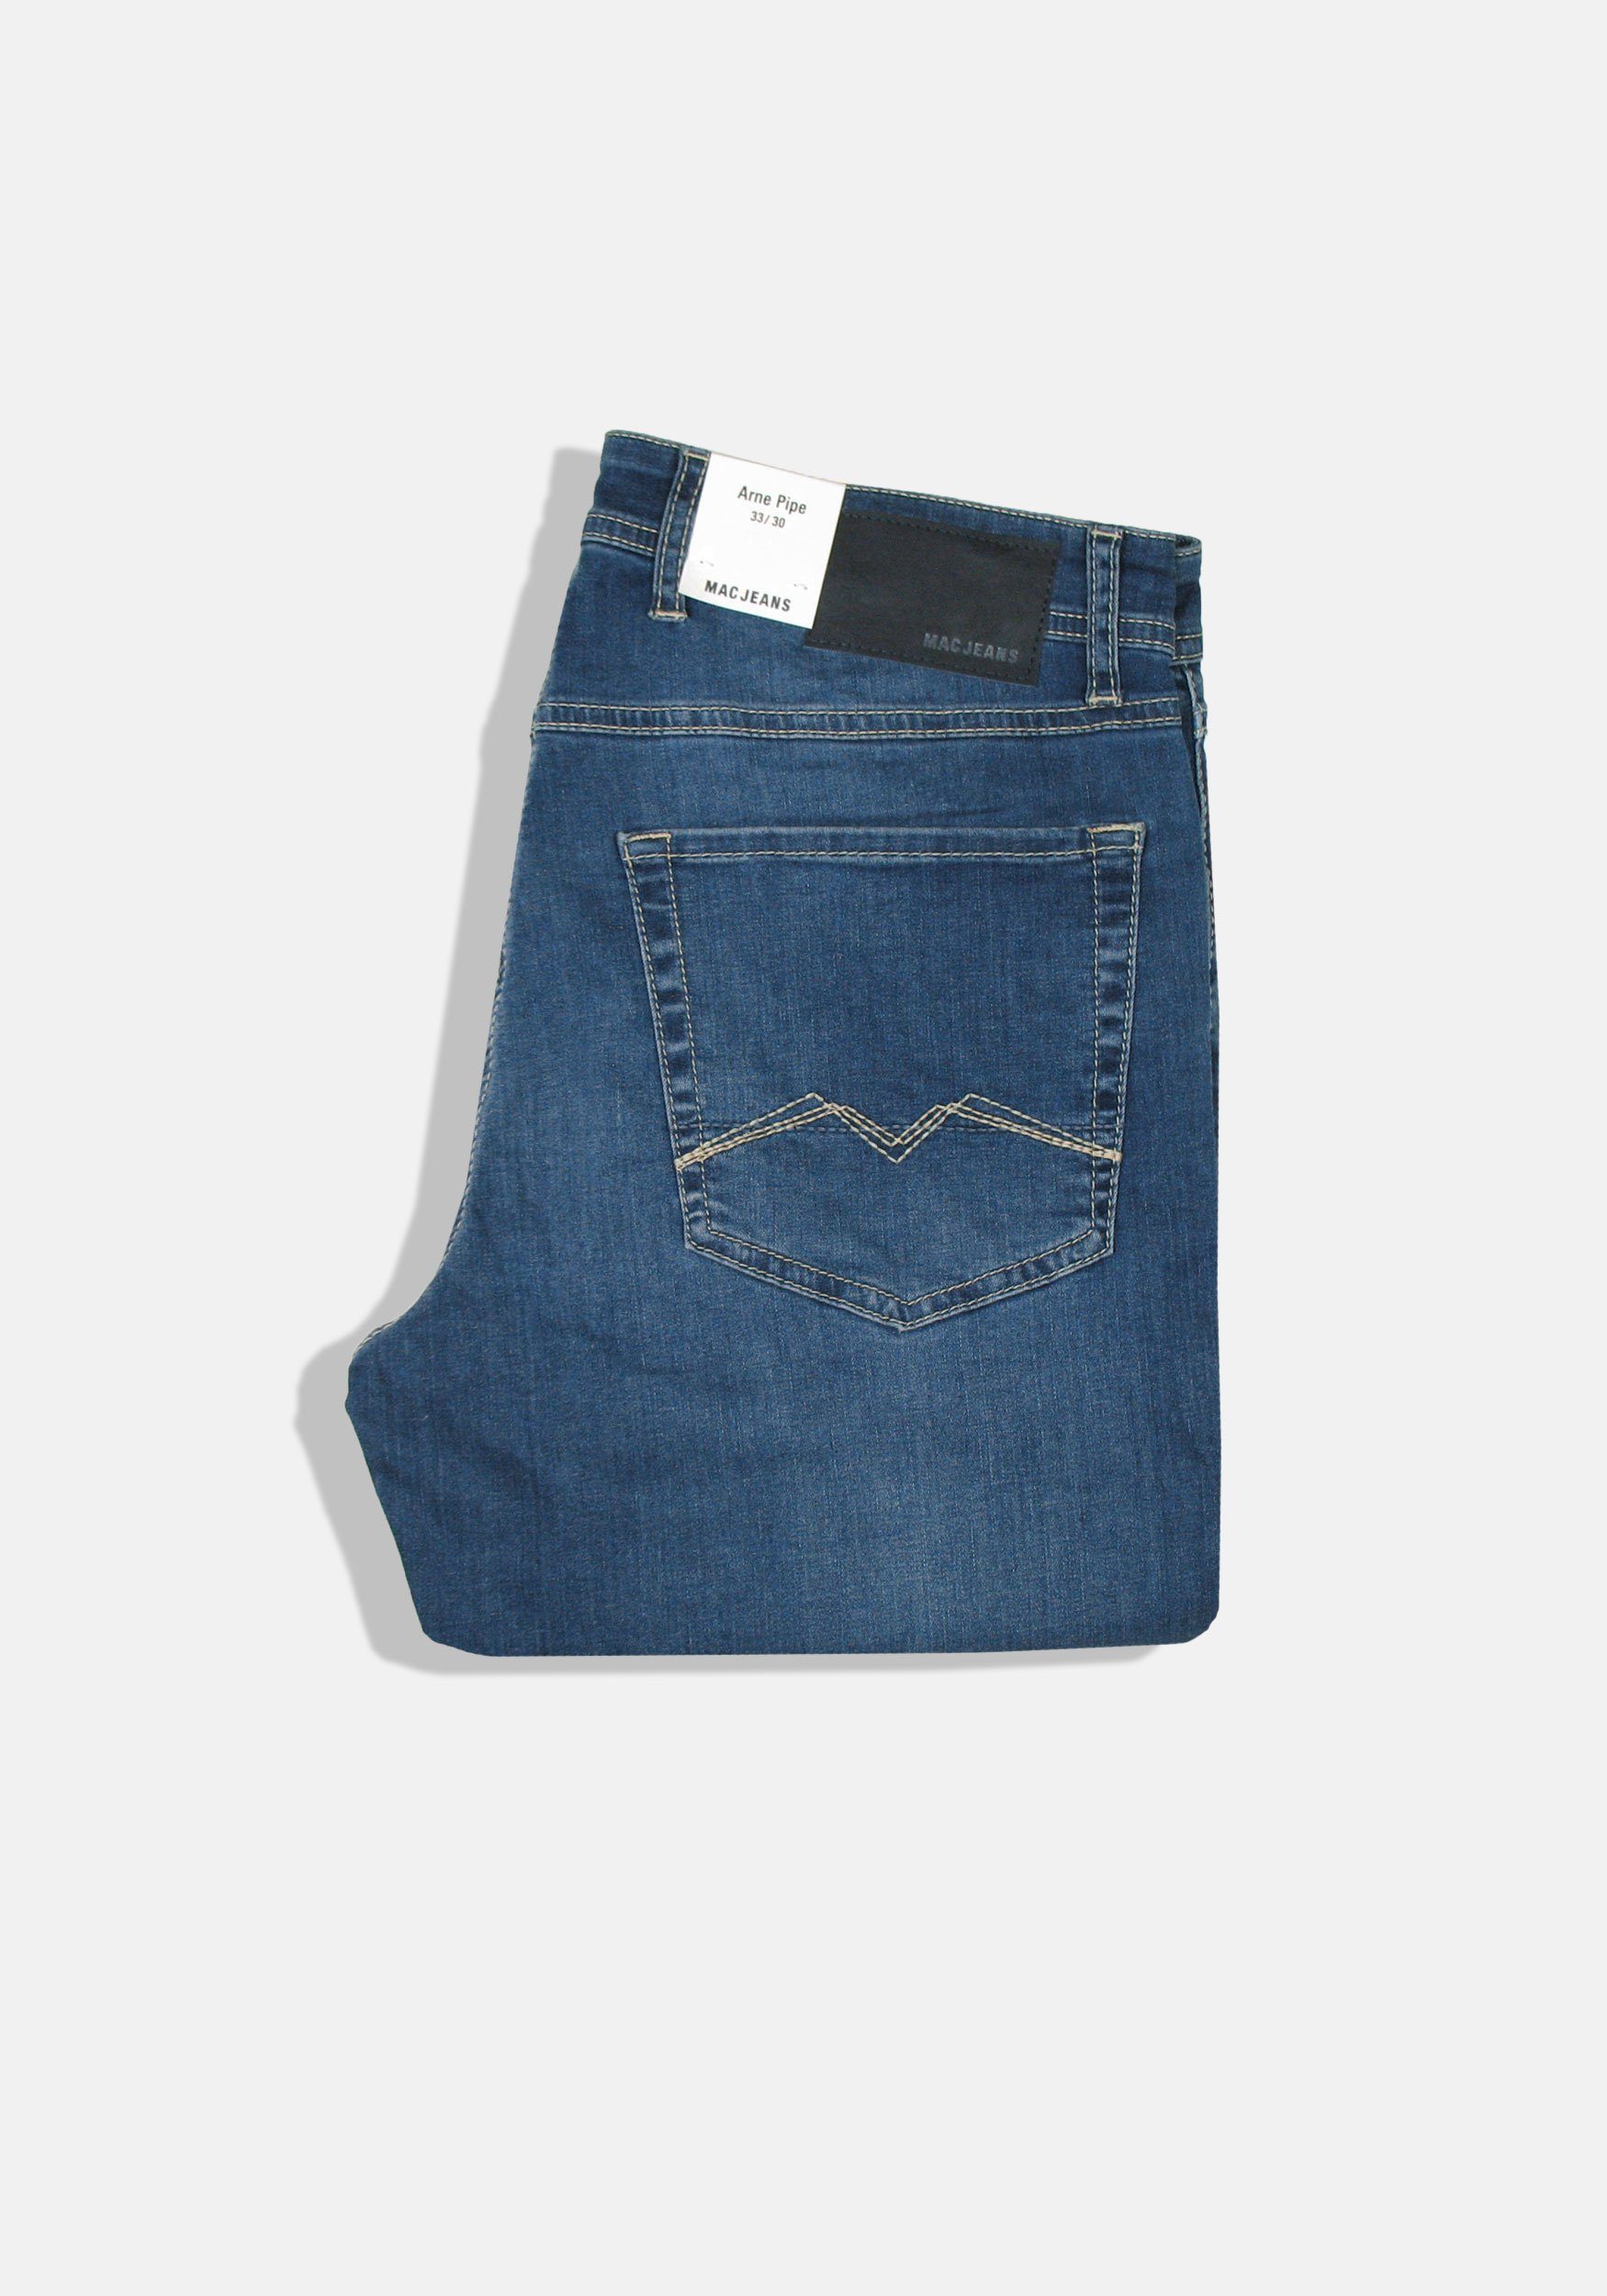 MAC 5-Pocket-Jeans und Wash Arne Vintage Ocean Stretch-Denim, Pipe elastisch bequem super